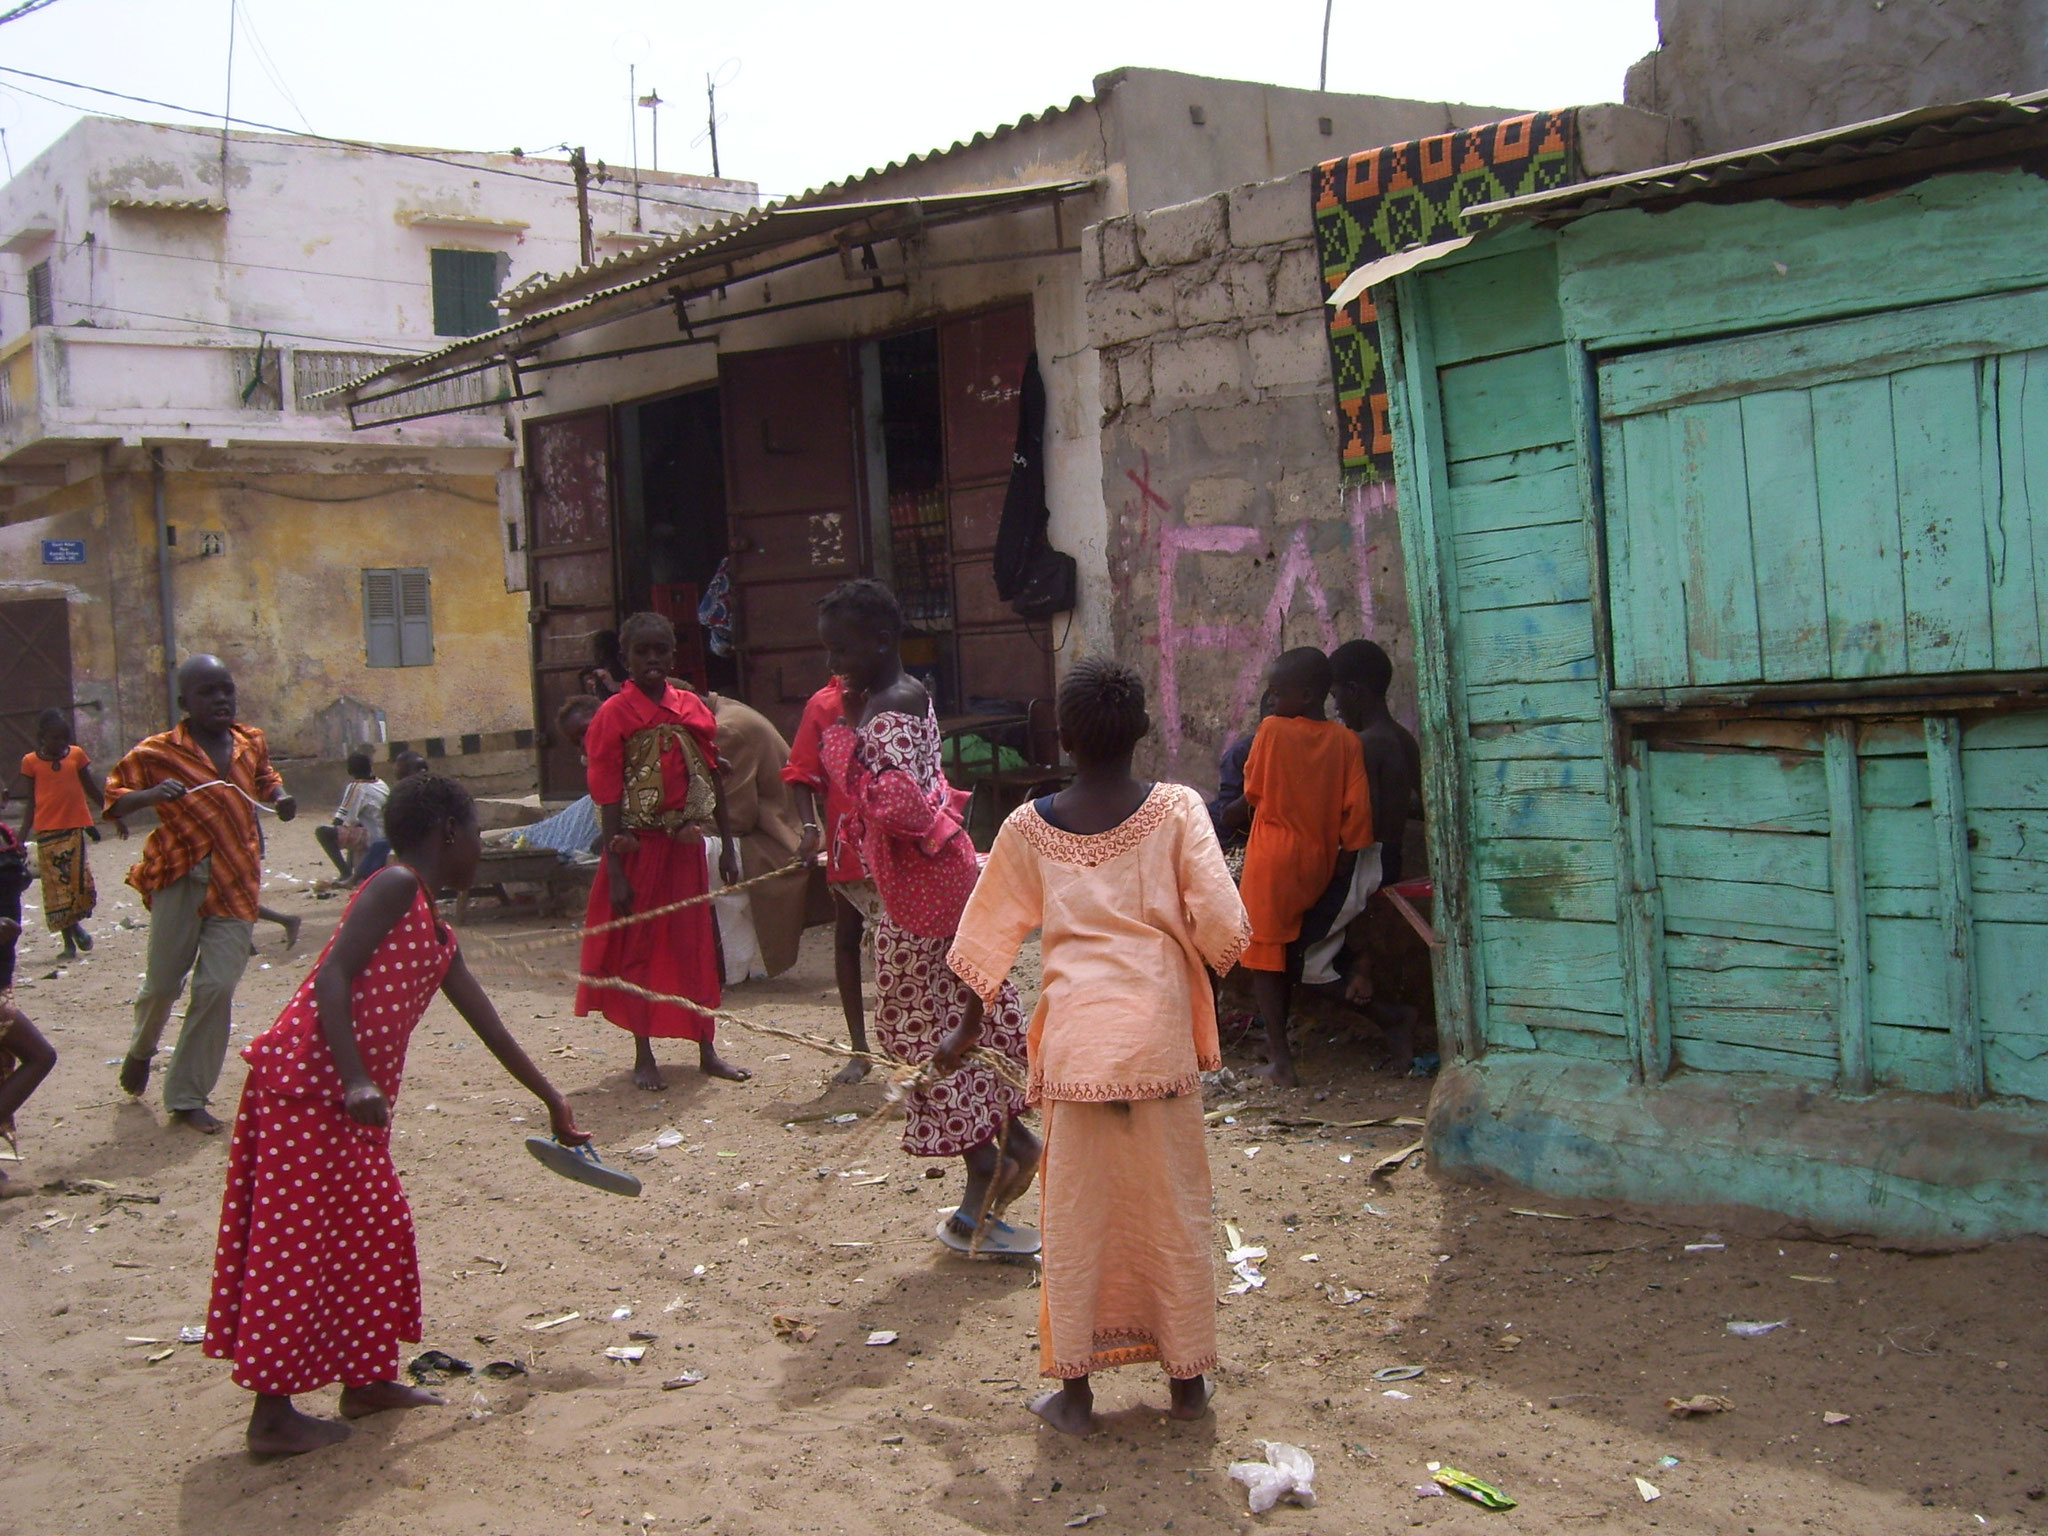 Kinder beim Spielen auf der Straße.